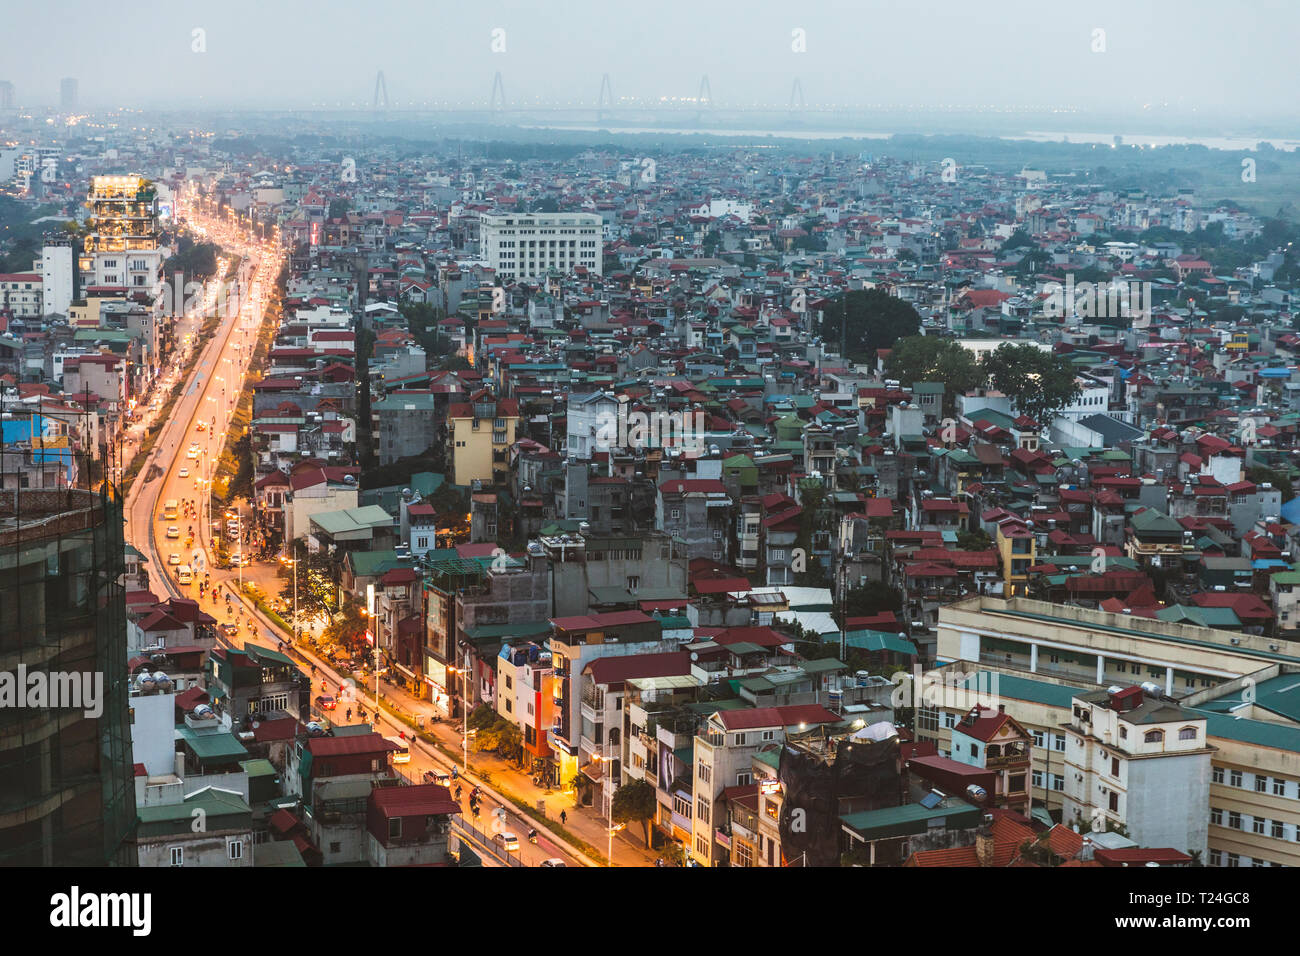 Il Vietnam, Hanoi, vista panoramica della città al tramonto, con illuminato la strada principale e dark zone residenziali Foto Stock